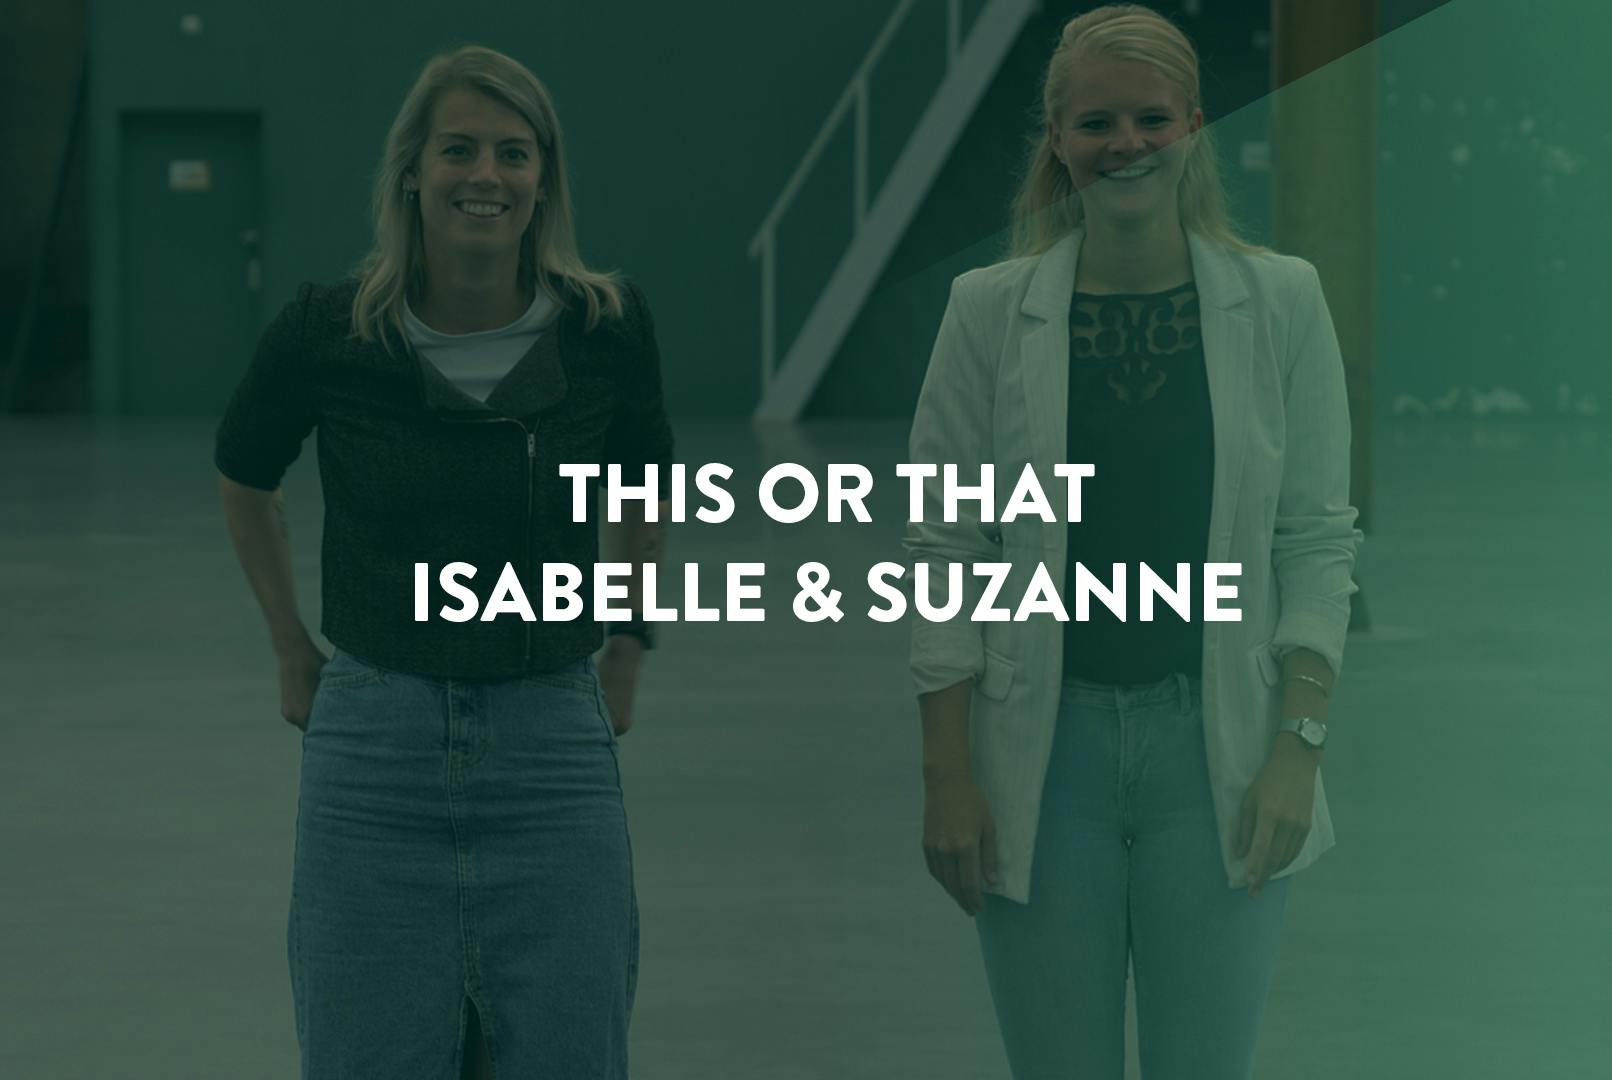 Isabelle en Suzanne die lachend staan met de tekst 'this or that' ervoor.